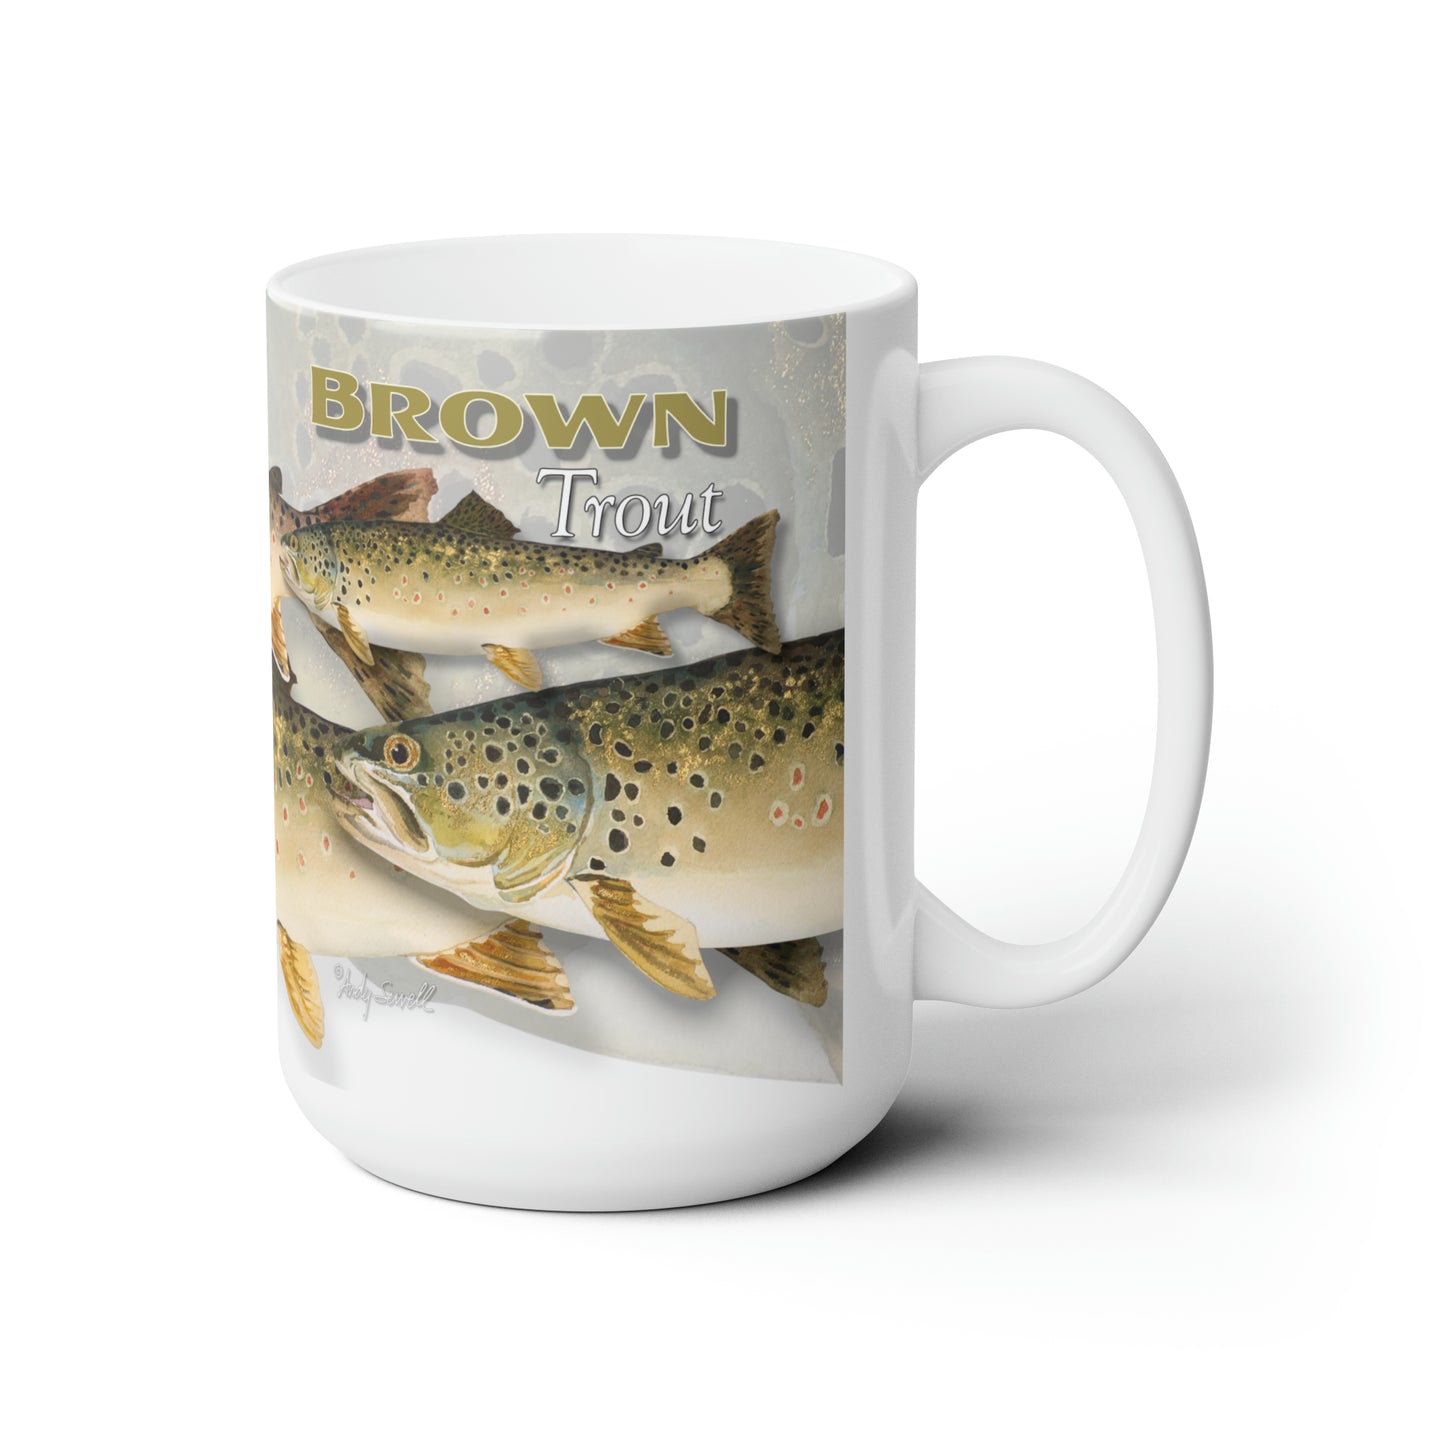 Brown Trout Mug, Fisherman Mug, Trout Fishing Mug, Fish Coffee Mug, Fishing Gifts For Dad, Fishing Mug For Men